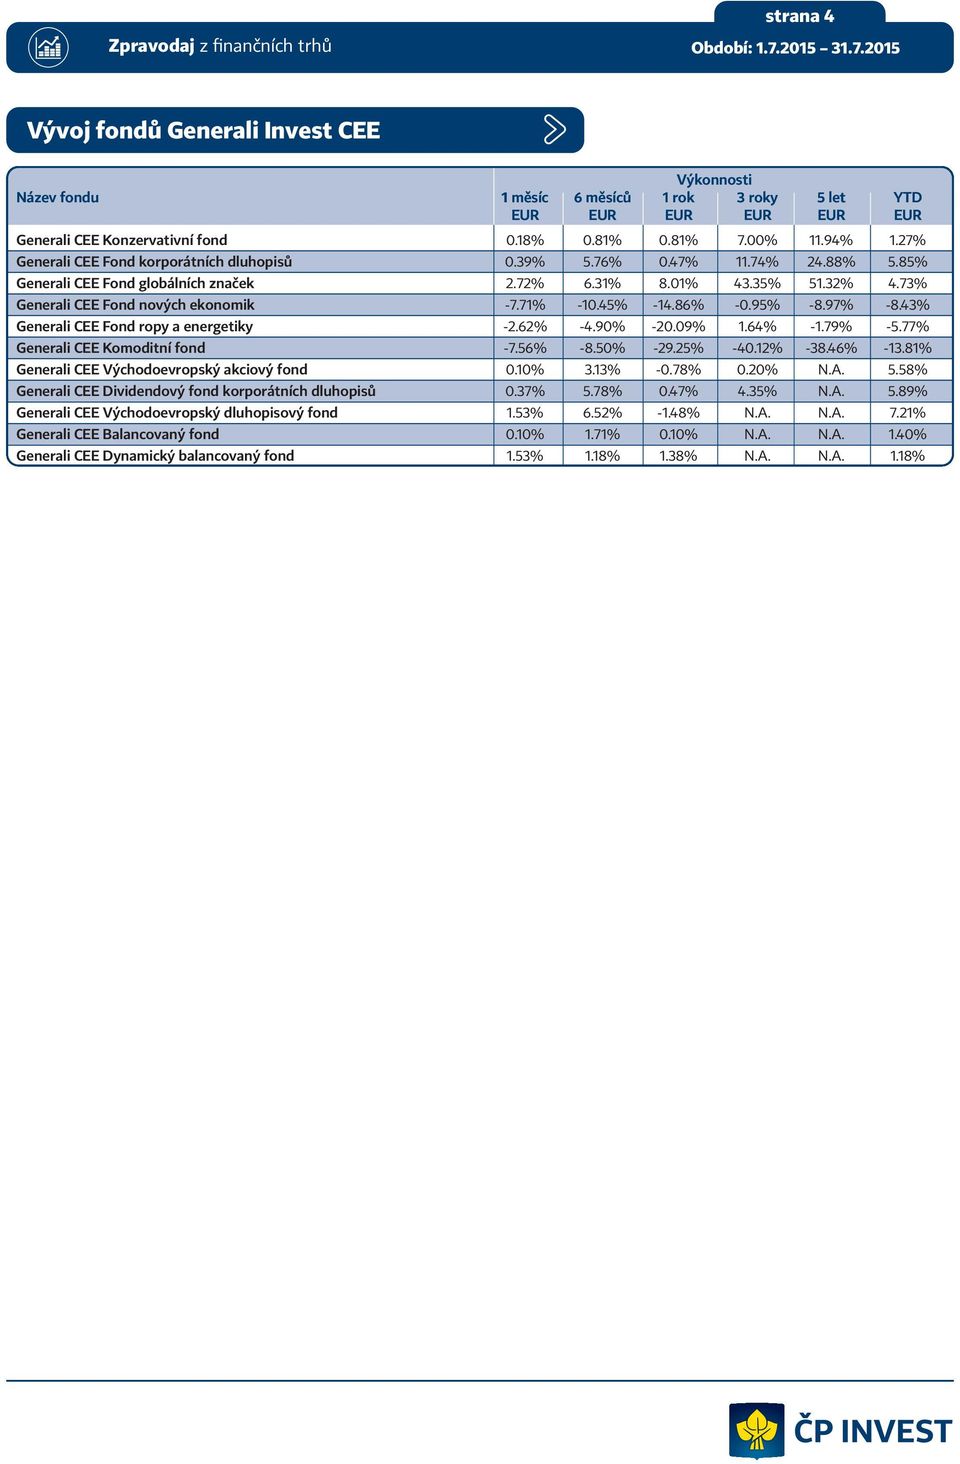 71% -10.45% -14.86% -0.95% -8.97% -8.43% Generali CEE Fond ropy a energetiky -2.62% -4.90% -20.09% 1.64% -1.79% -5.77% Generali CEE Komoditní fond -7.56% -8.50% -29.25% -40.12% -38.46% -13.